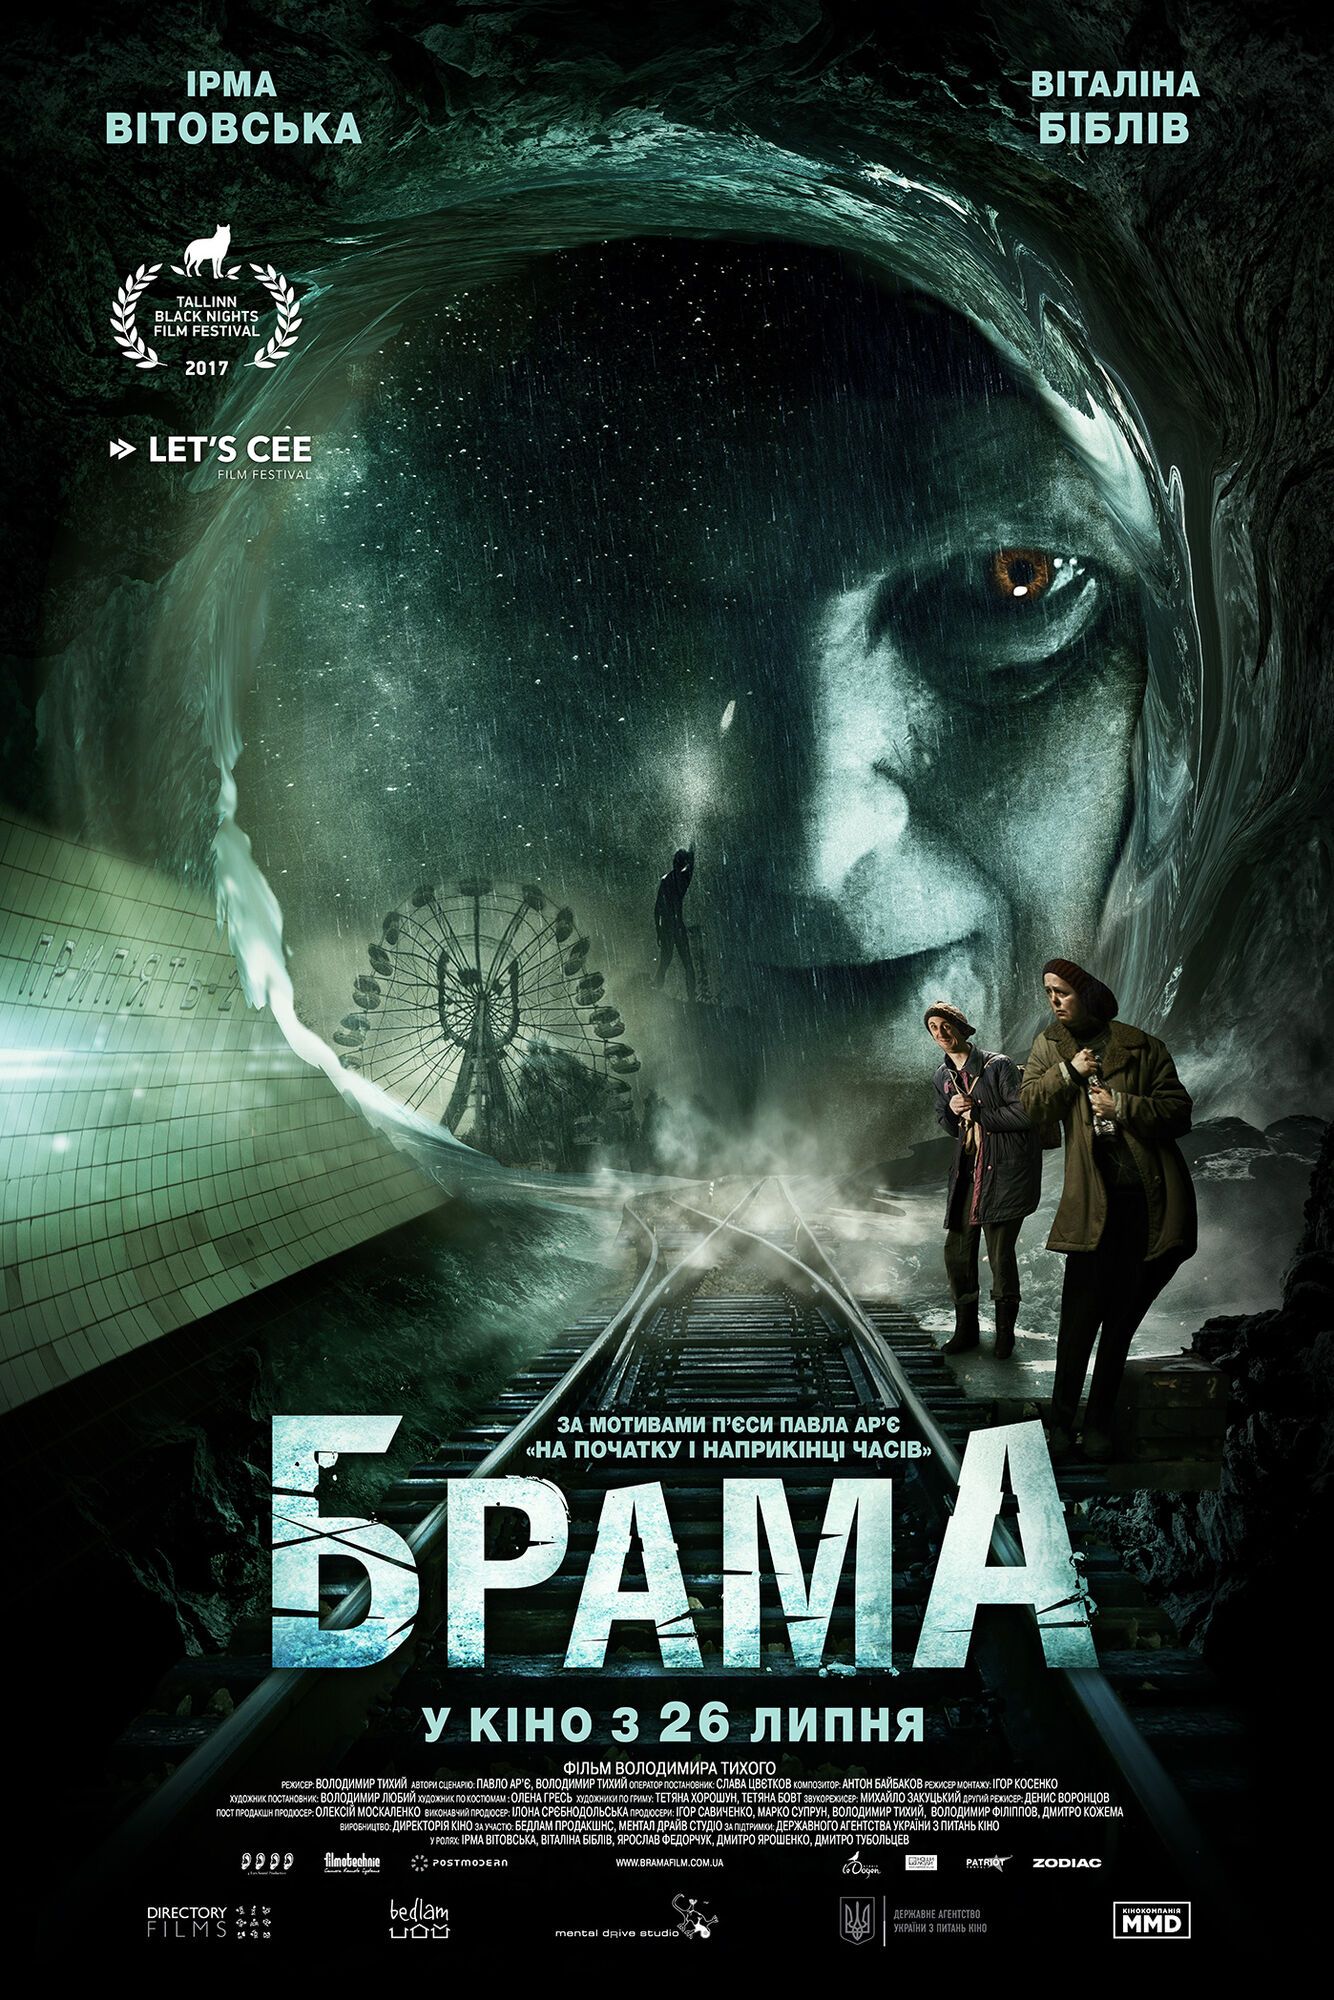 Вышел официальный трейлер украинского мистического триллера "Брама" с Ирмой Витовской в главной роли